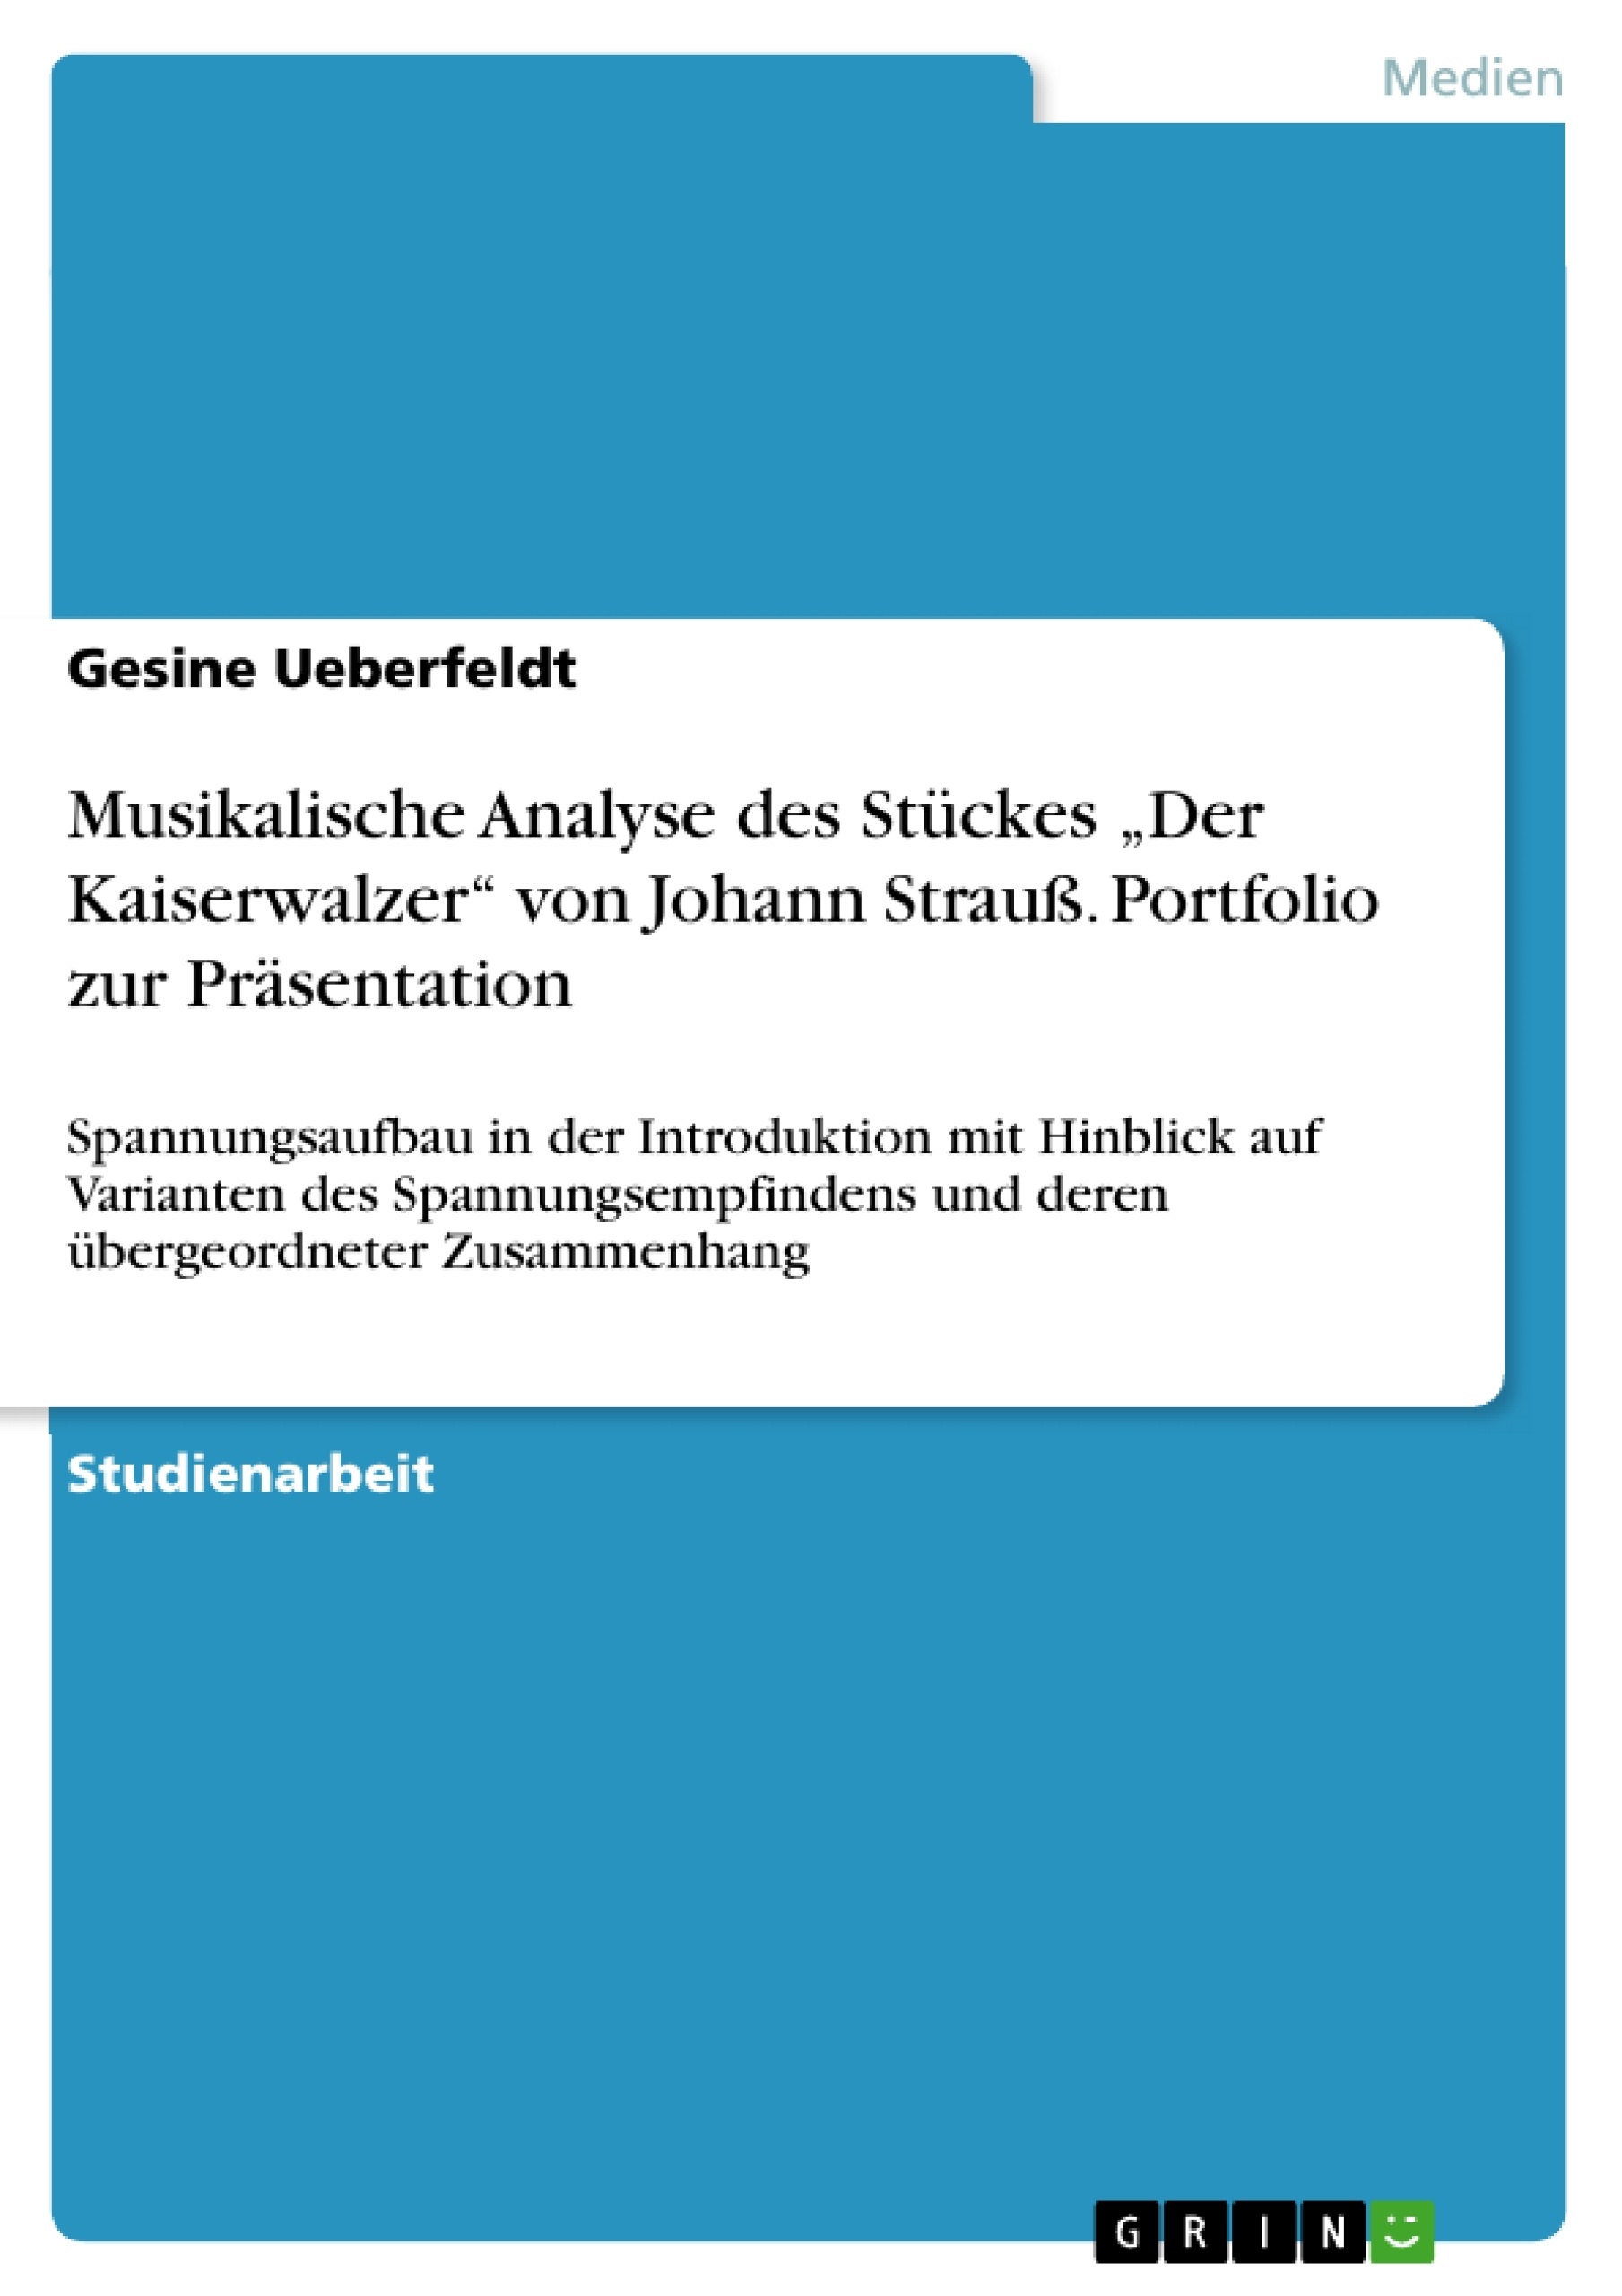 Título: Musikalische Analyse des Stückes „Der Kaiserwalzer“ von Johann Strauß. Portfolio zur Präsentation